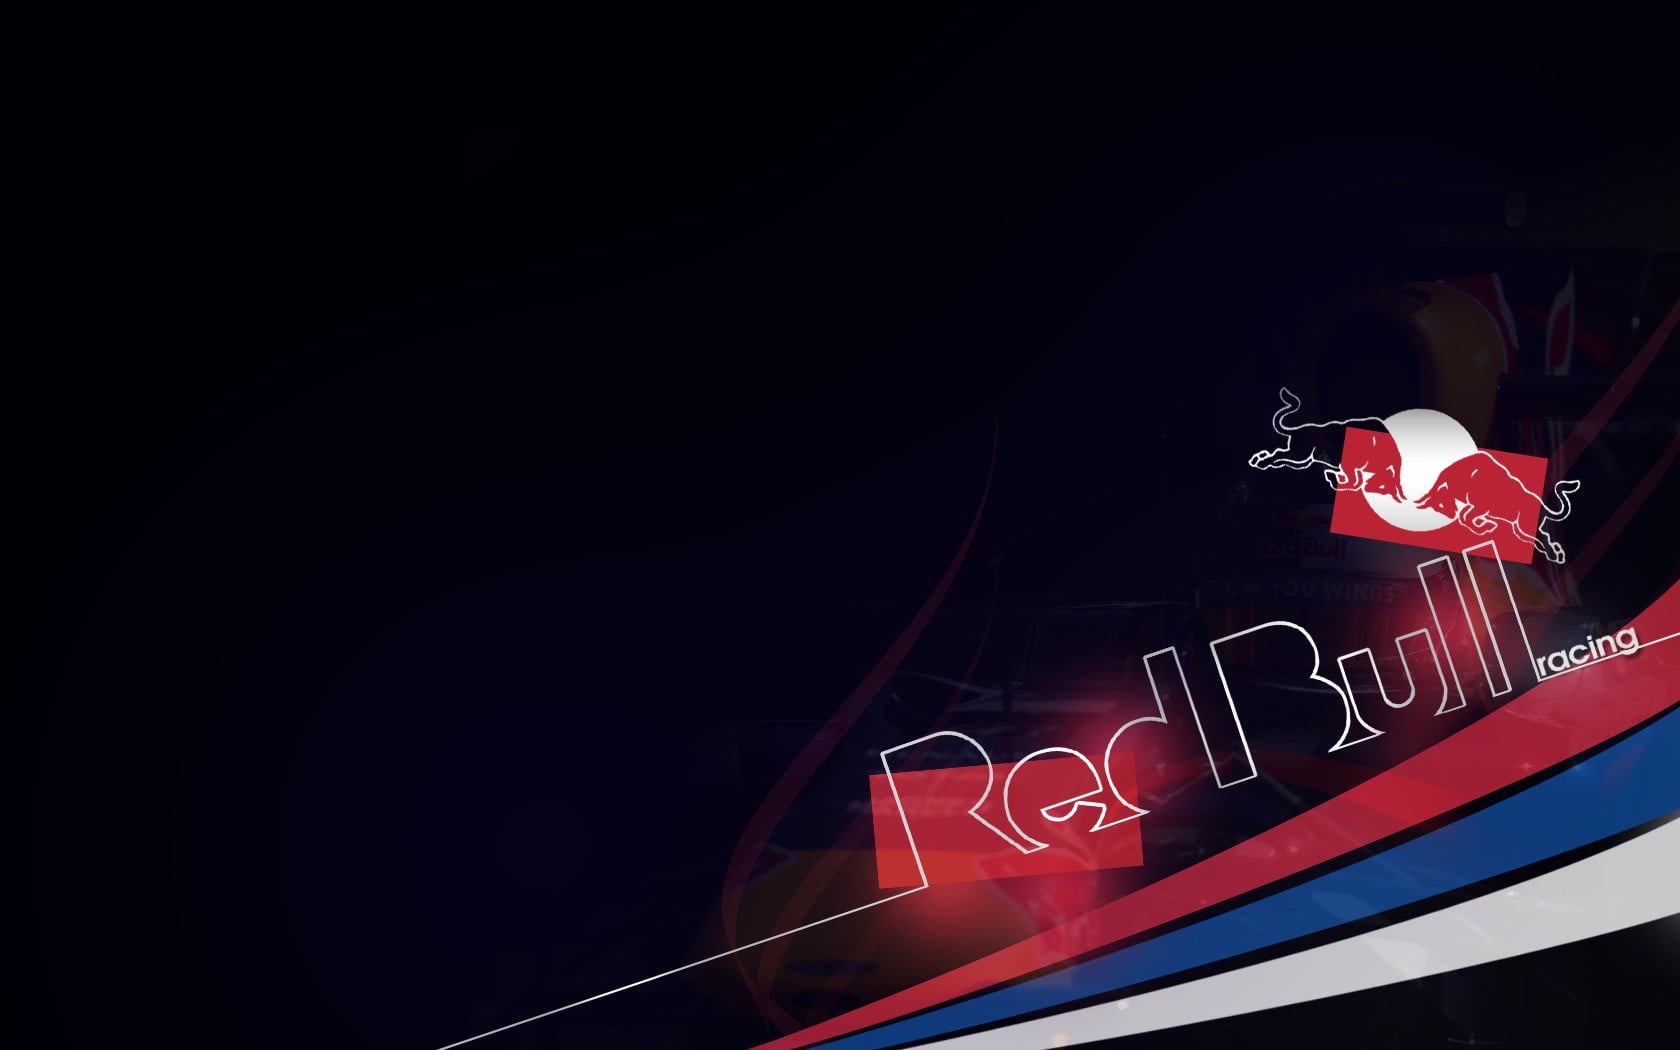 RedBull logo, Red Bull, racing, energy